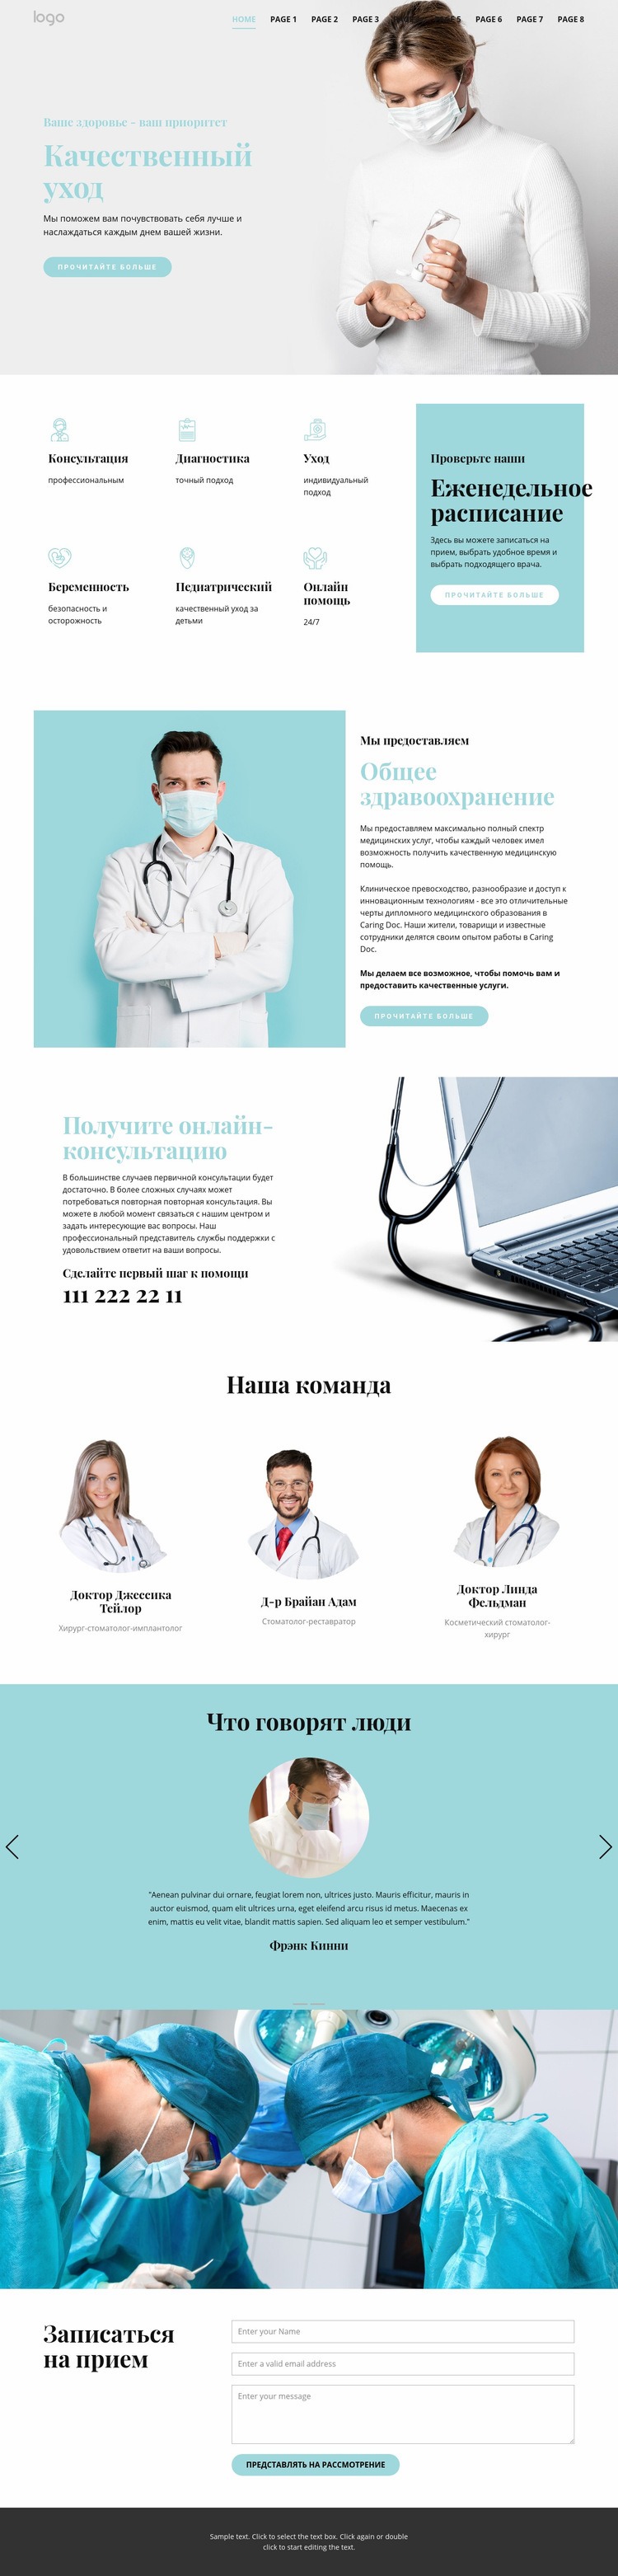 Качественная медицинская помощь Конструктор сайтов HTML